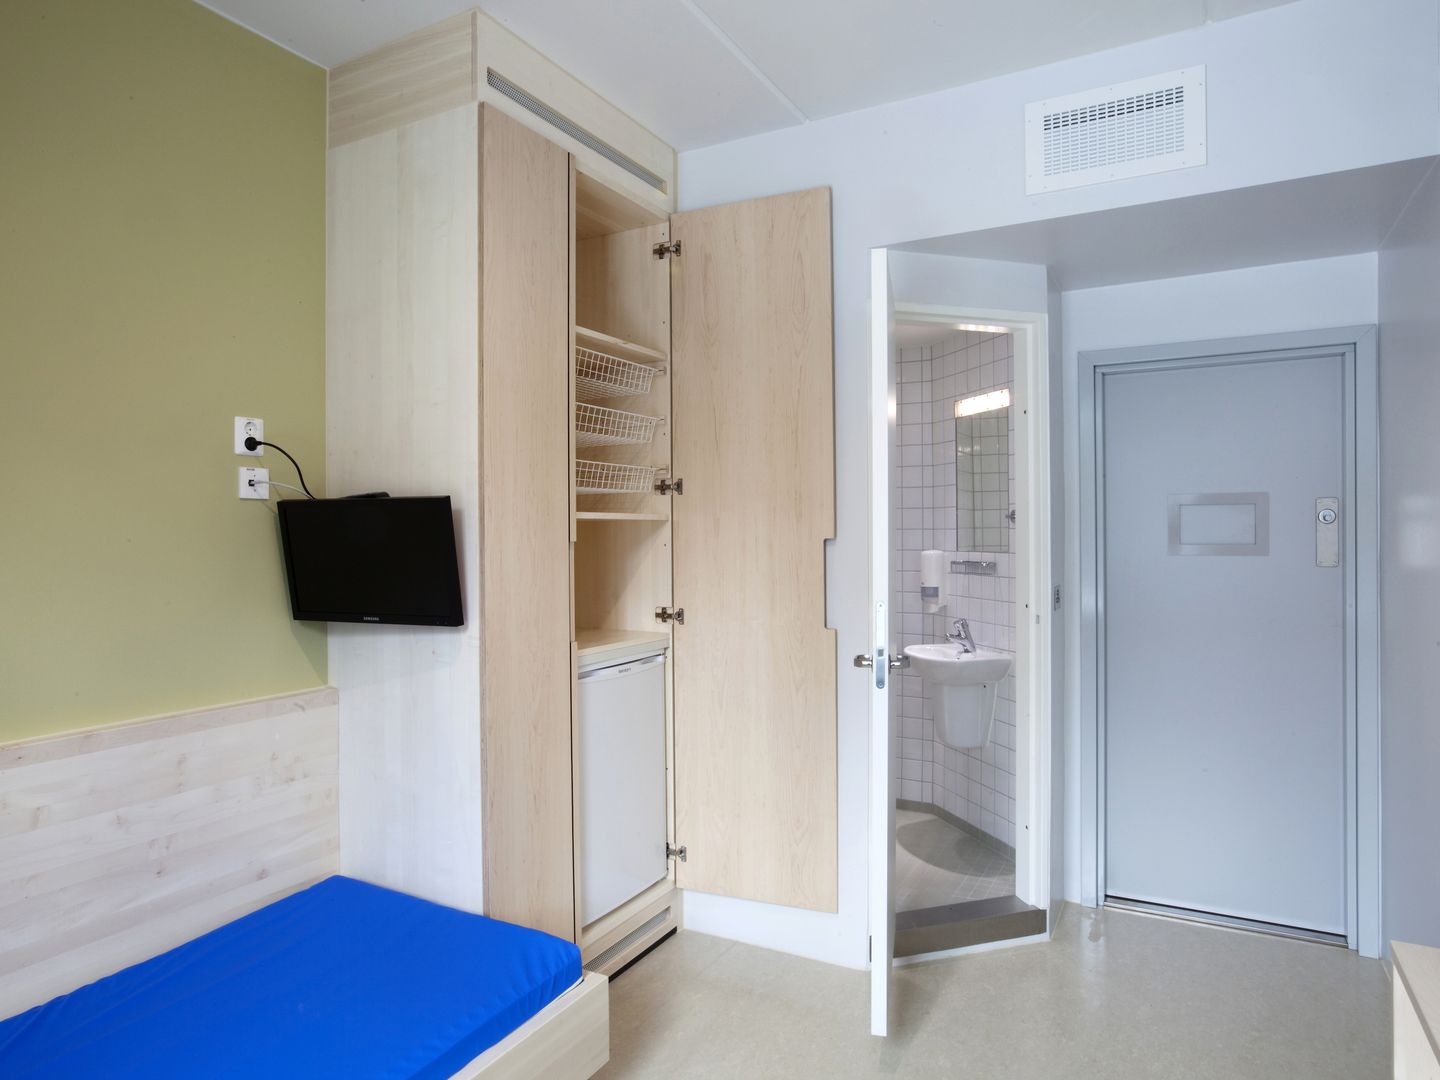 El interior de una celda de la prisión de Halden, en Noruega (Reuters).